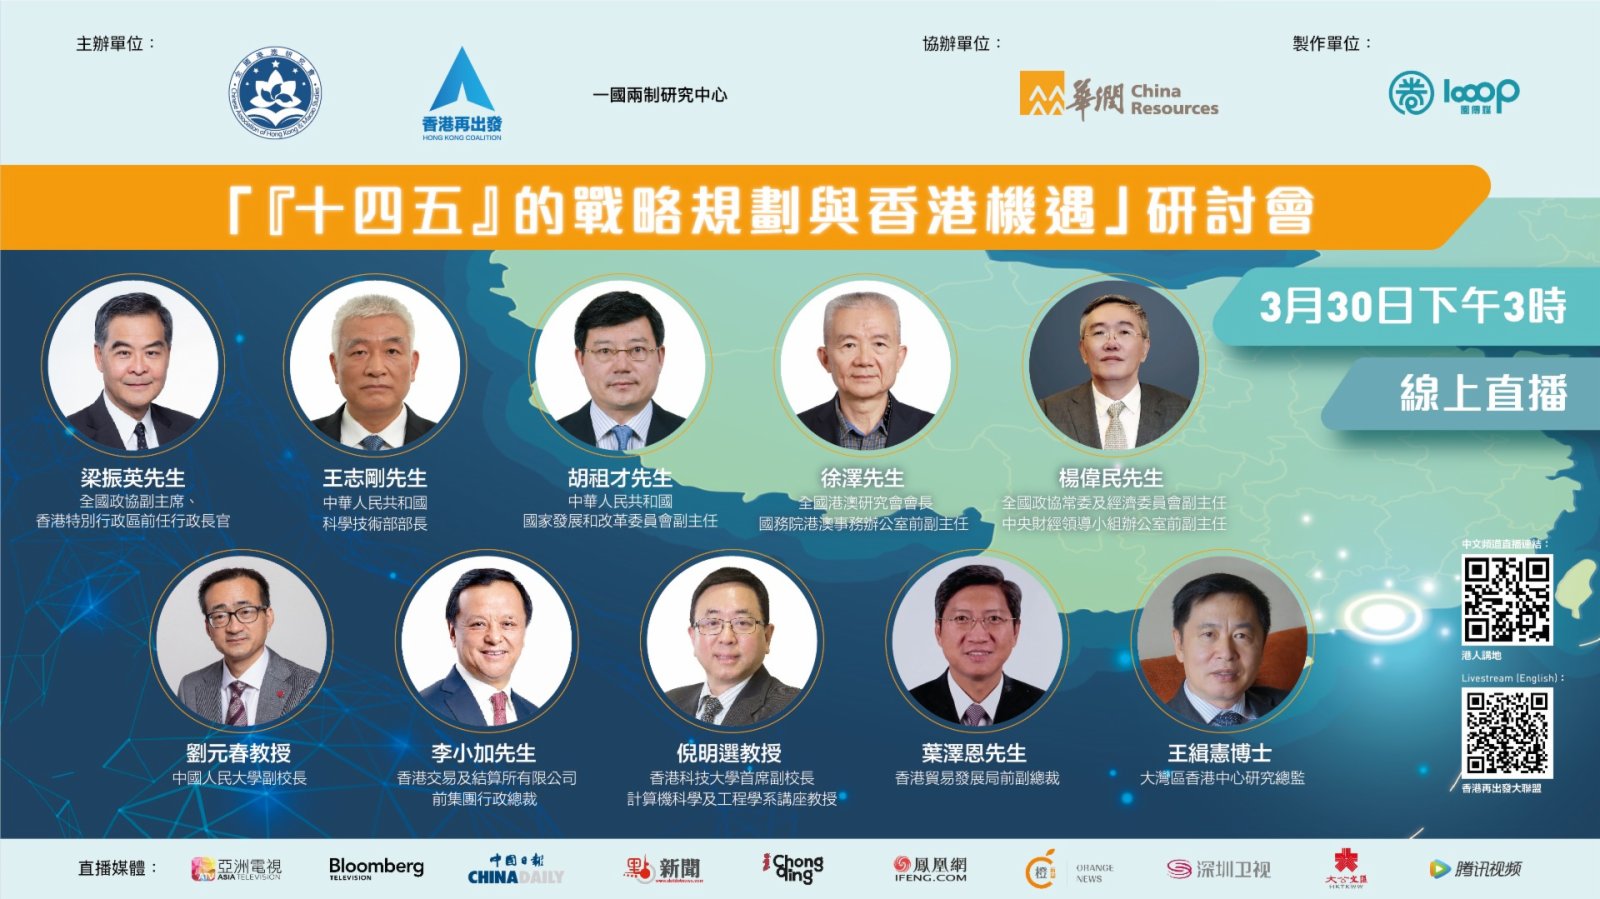 「『十四五』的戰略規劃與香港機遇」研討會